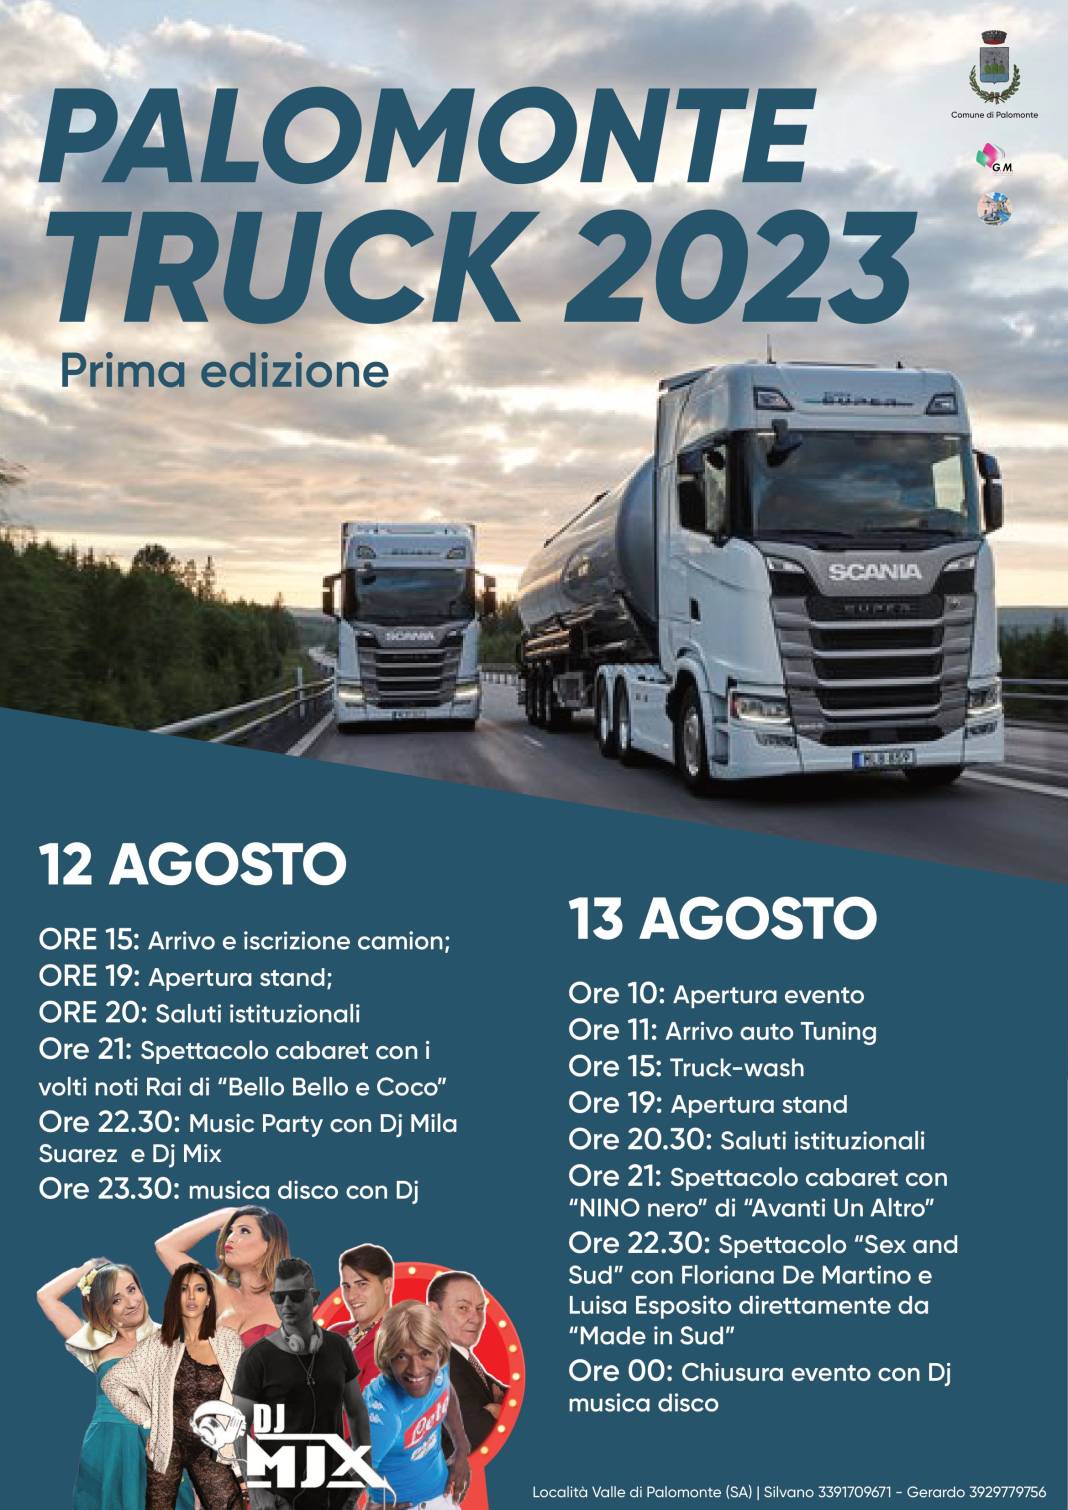 Palomonte Truck 2023